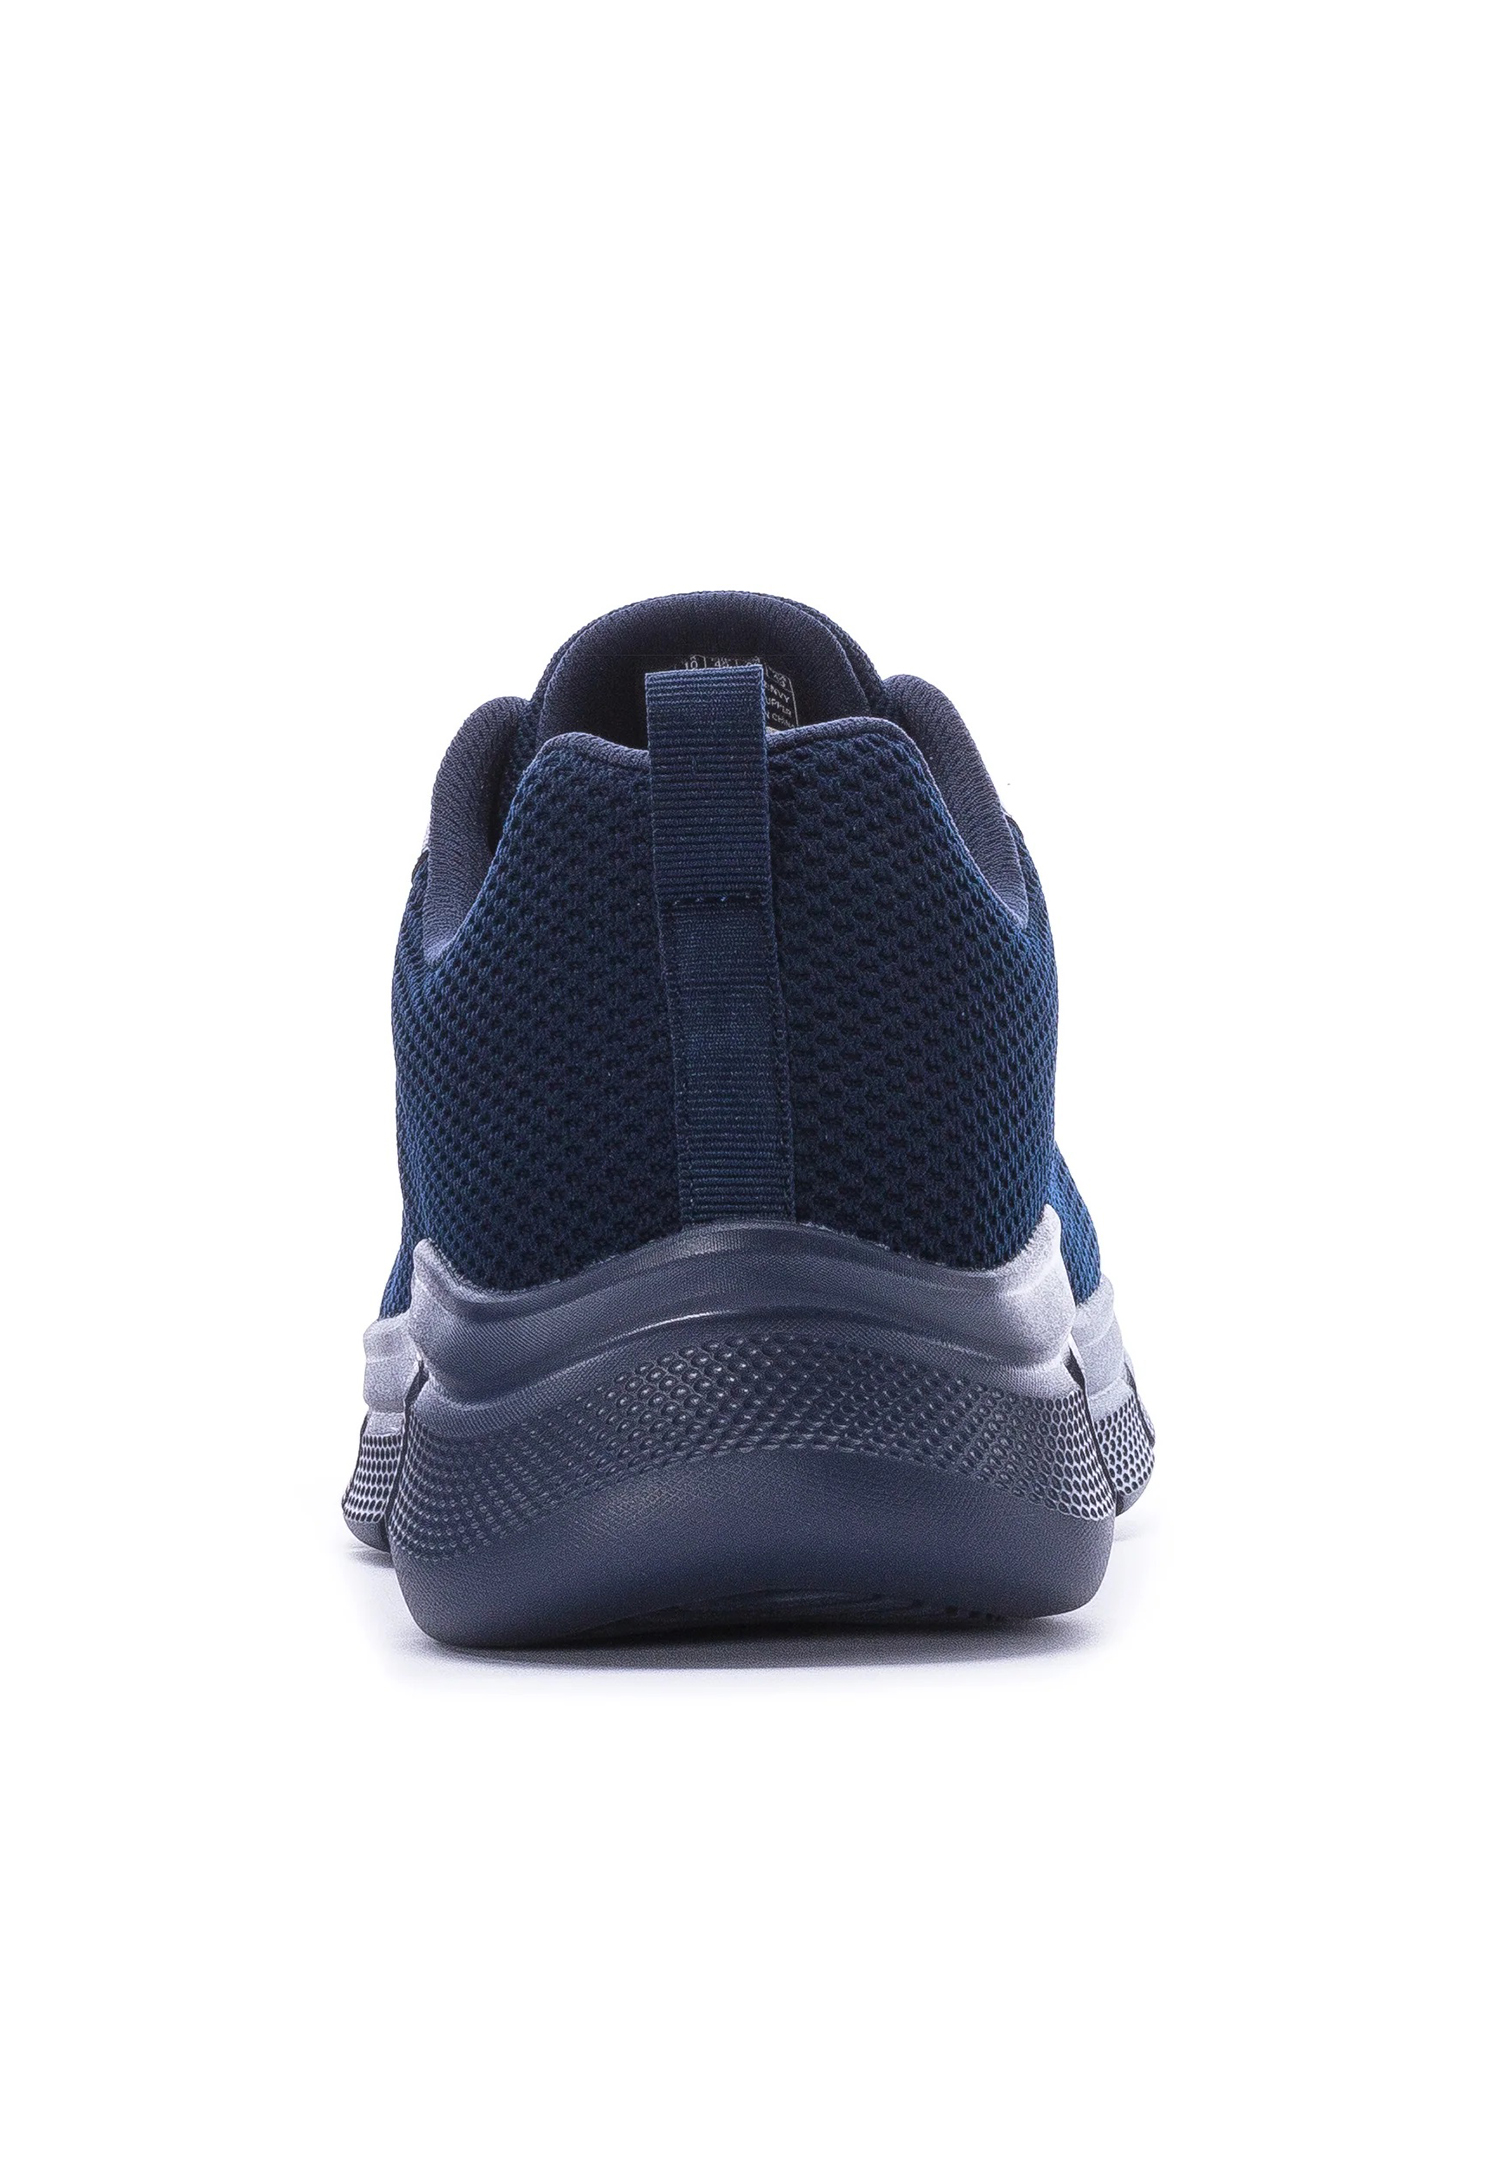 Skechers BOBS Sport B Flex - Chill Edge Herren Sneaker 118106 NVY navy